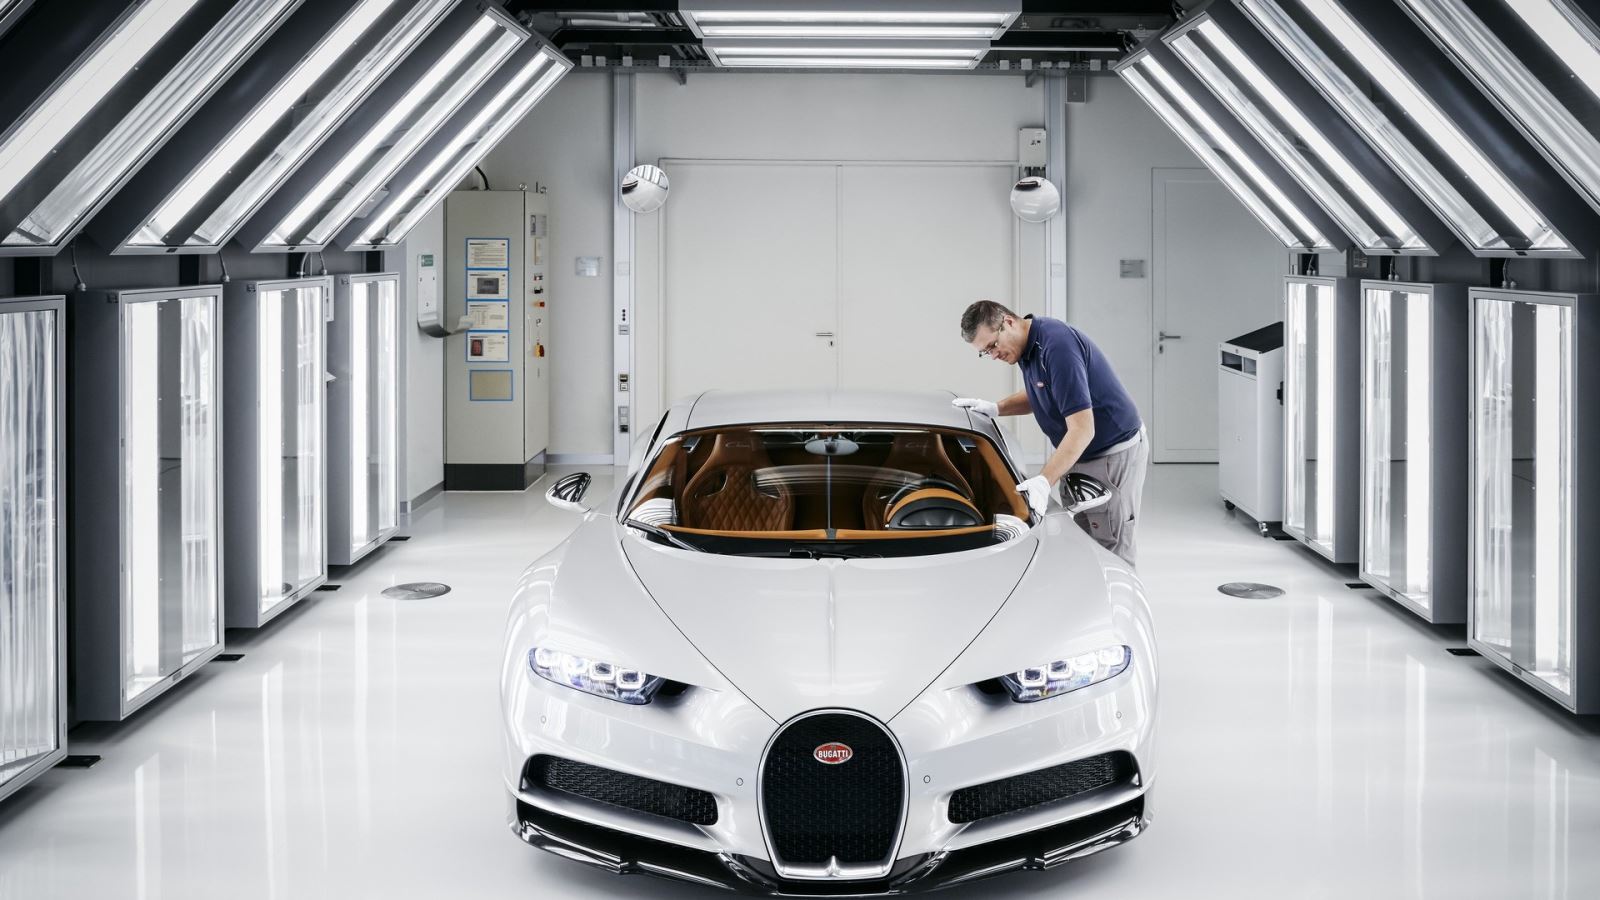 Siêu phẩm Bugatti tiếp theo sau Chiron dần hé lộ thông tin 3